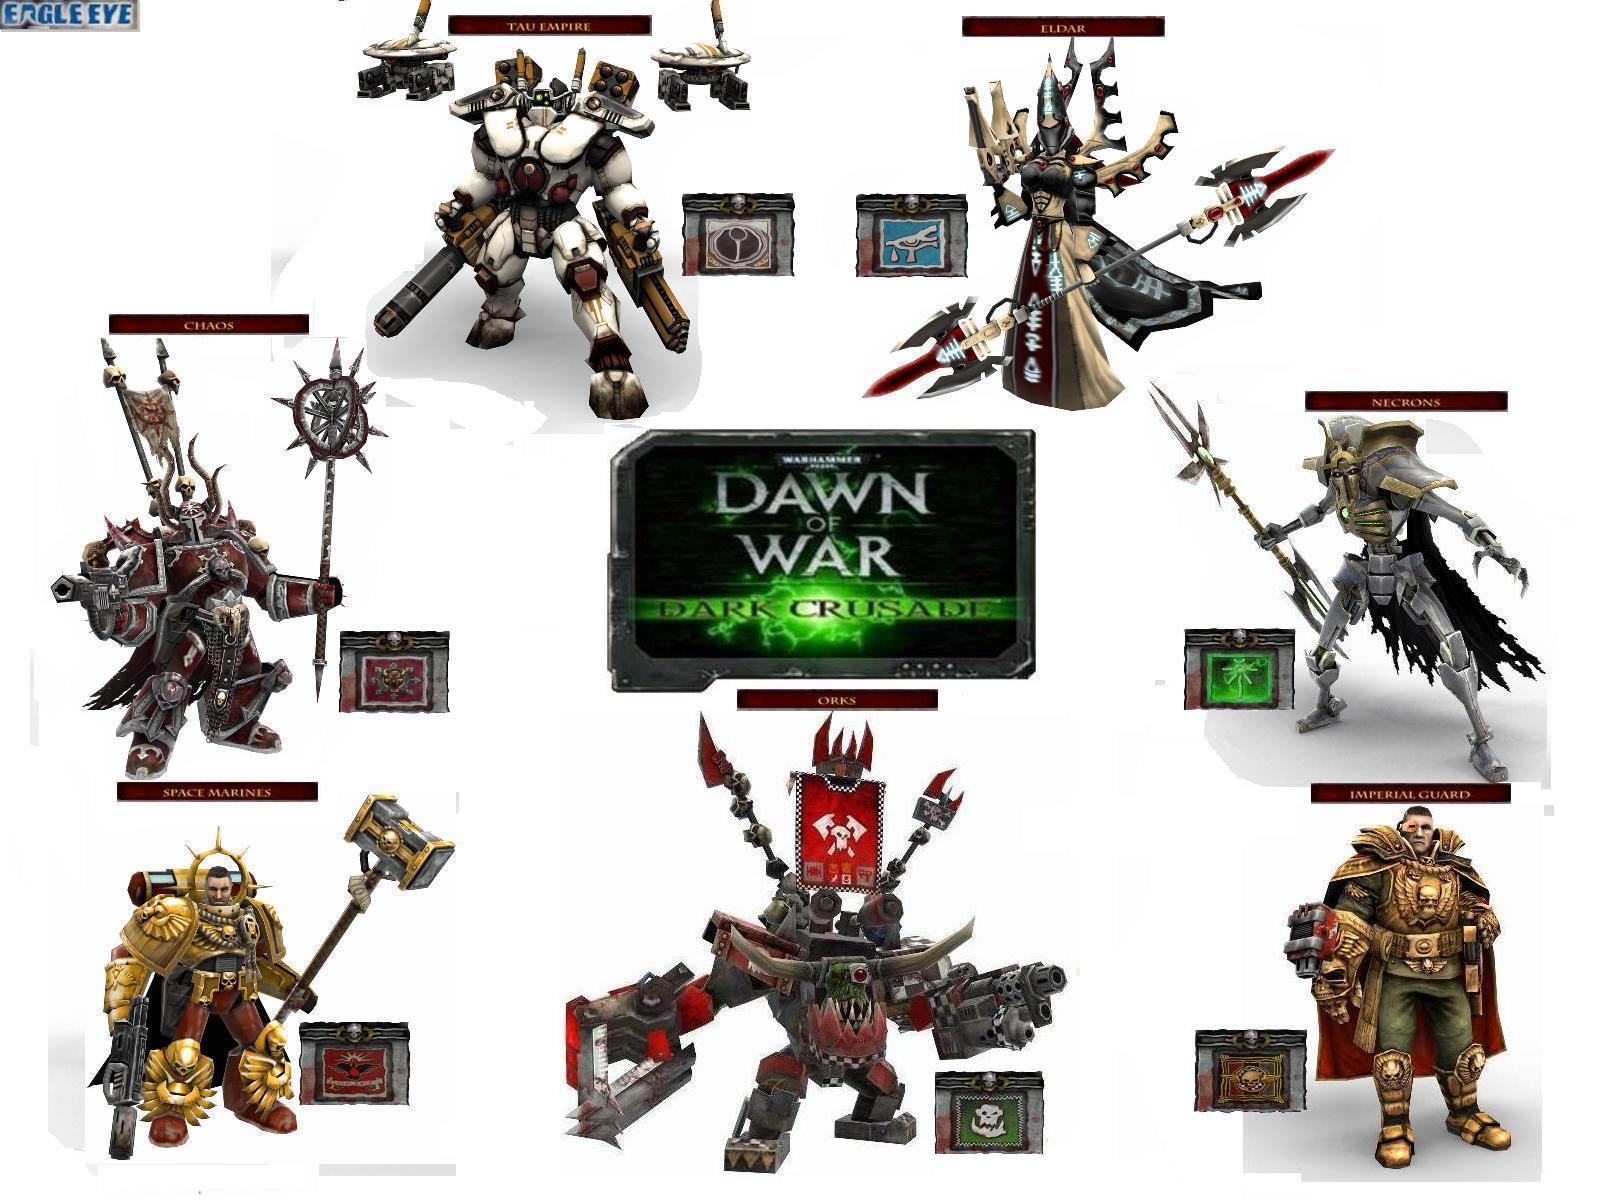 warhammer 40,000 dawn of war dark crusade